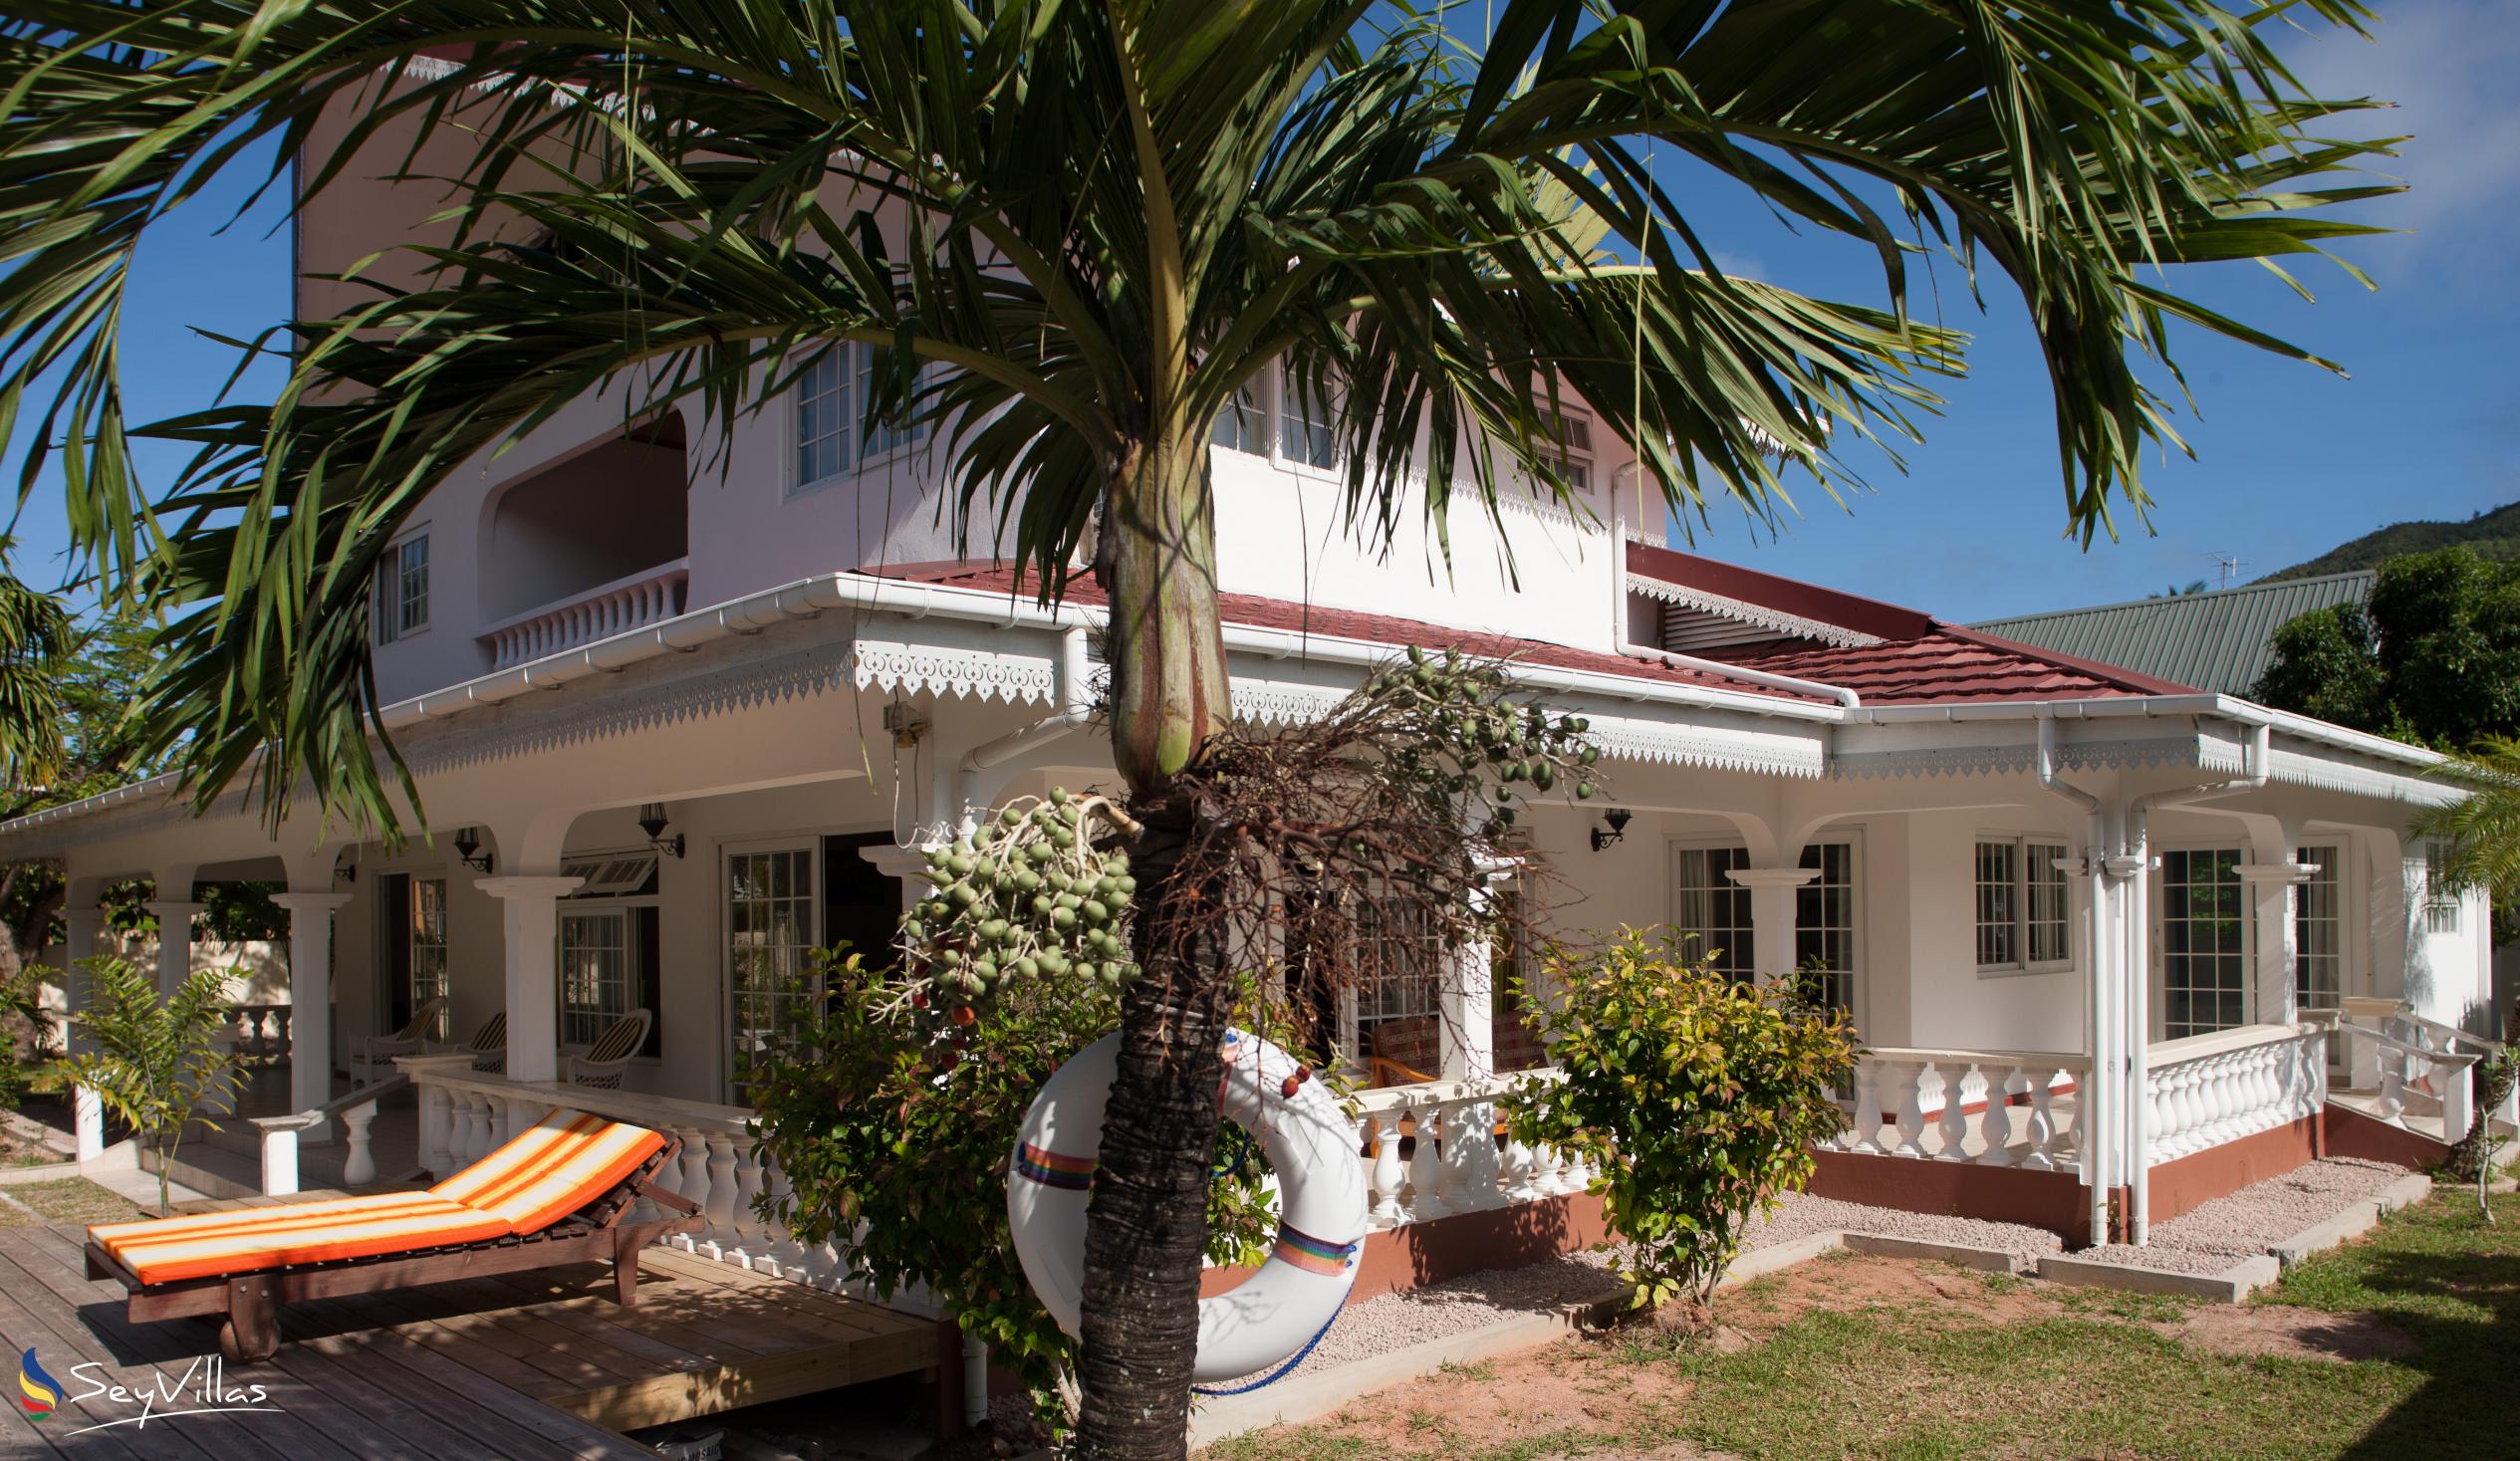 Foto 5: Villa Confort - Aussenbereich - Praslin (Seychellen)